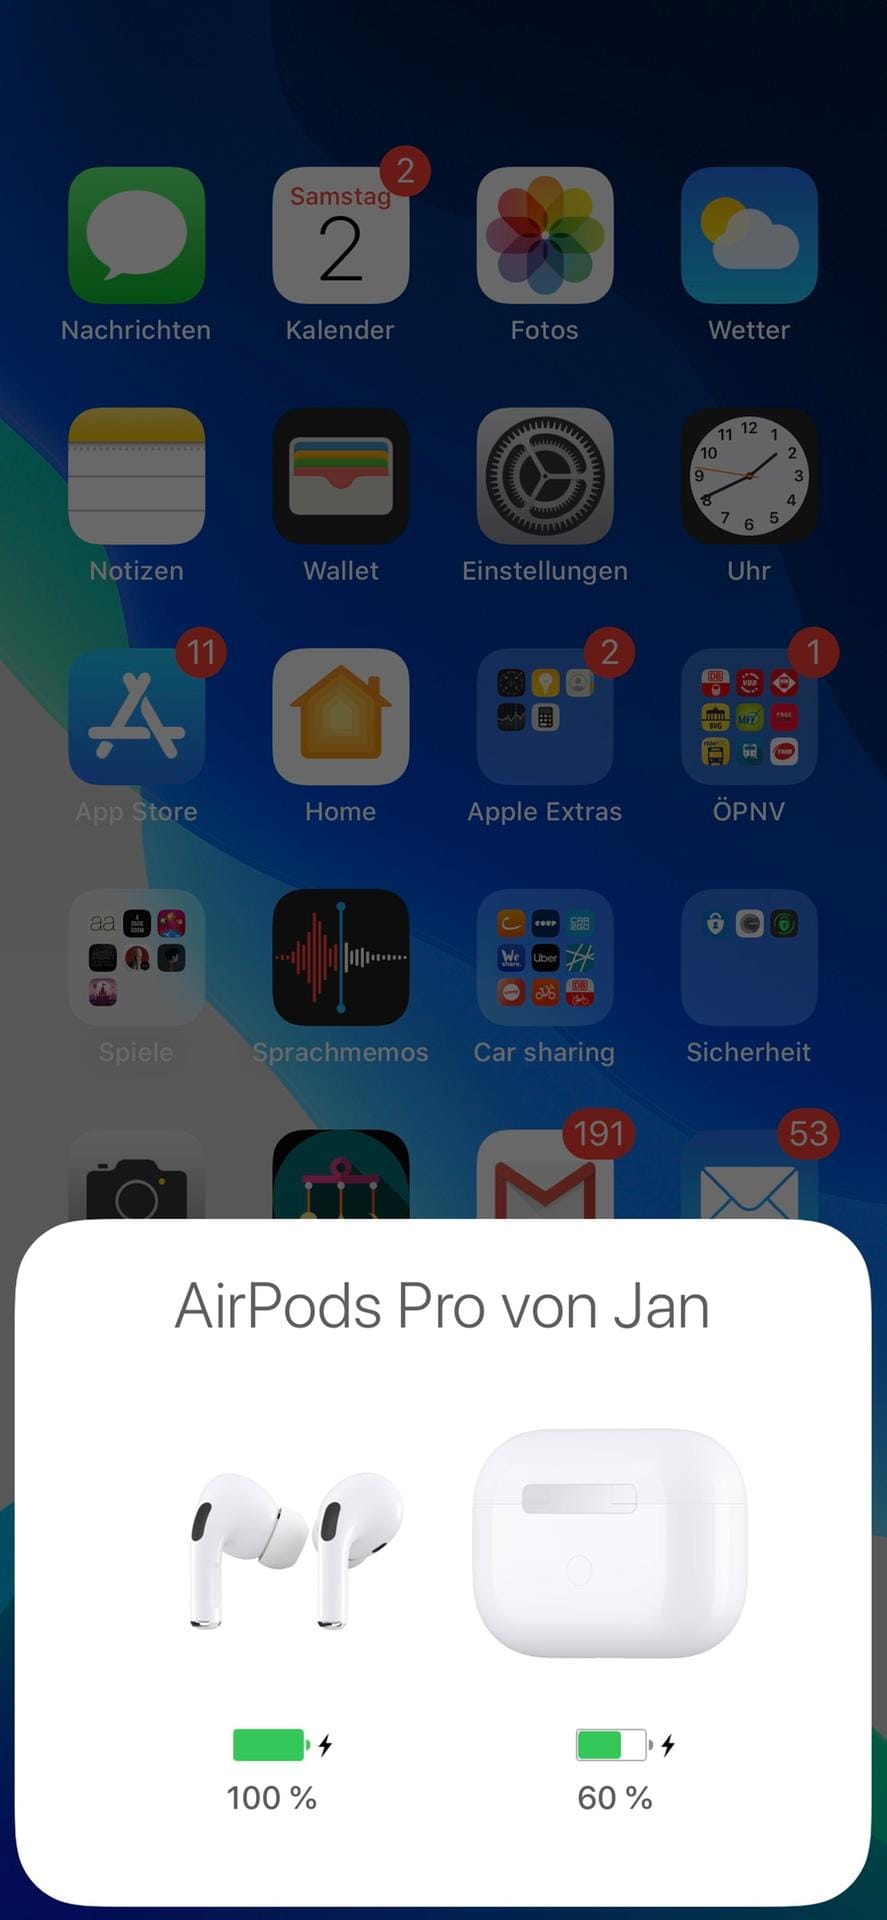 Die Einrichtung der AirPods Pro ist so einfach wie gehabt: Case öffnen, an das iPhone halten und in diesem Dialog auf "Verbinden" tippen. Fertig.